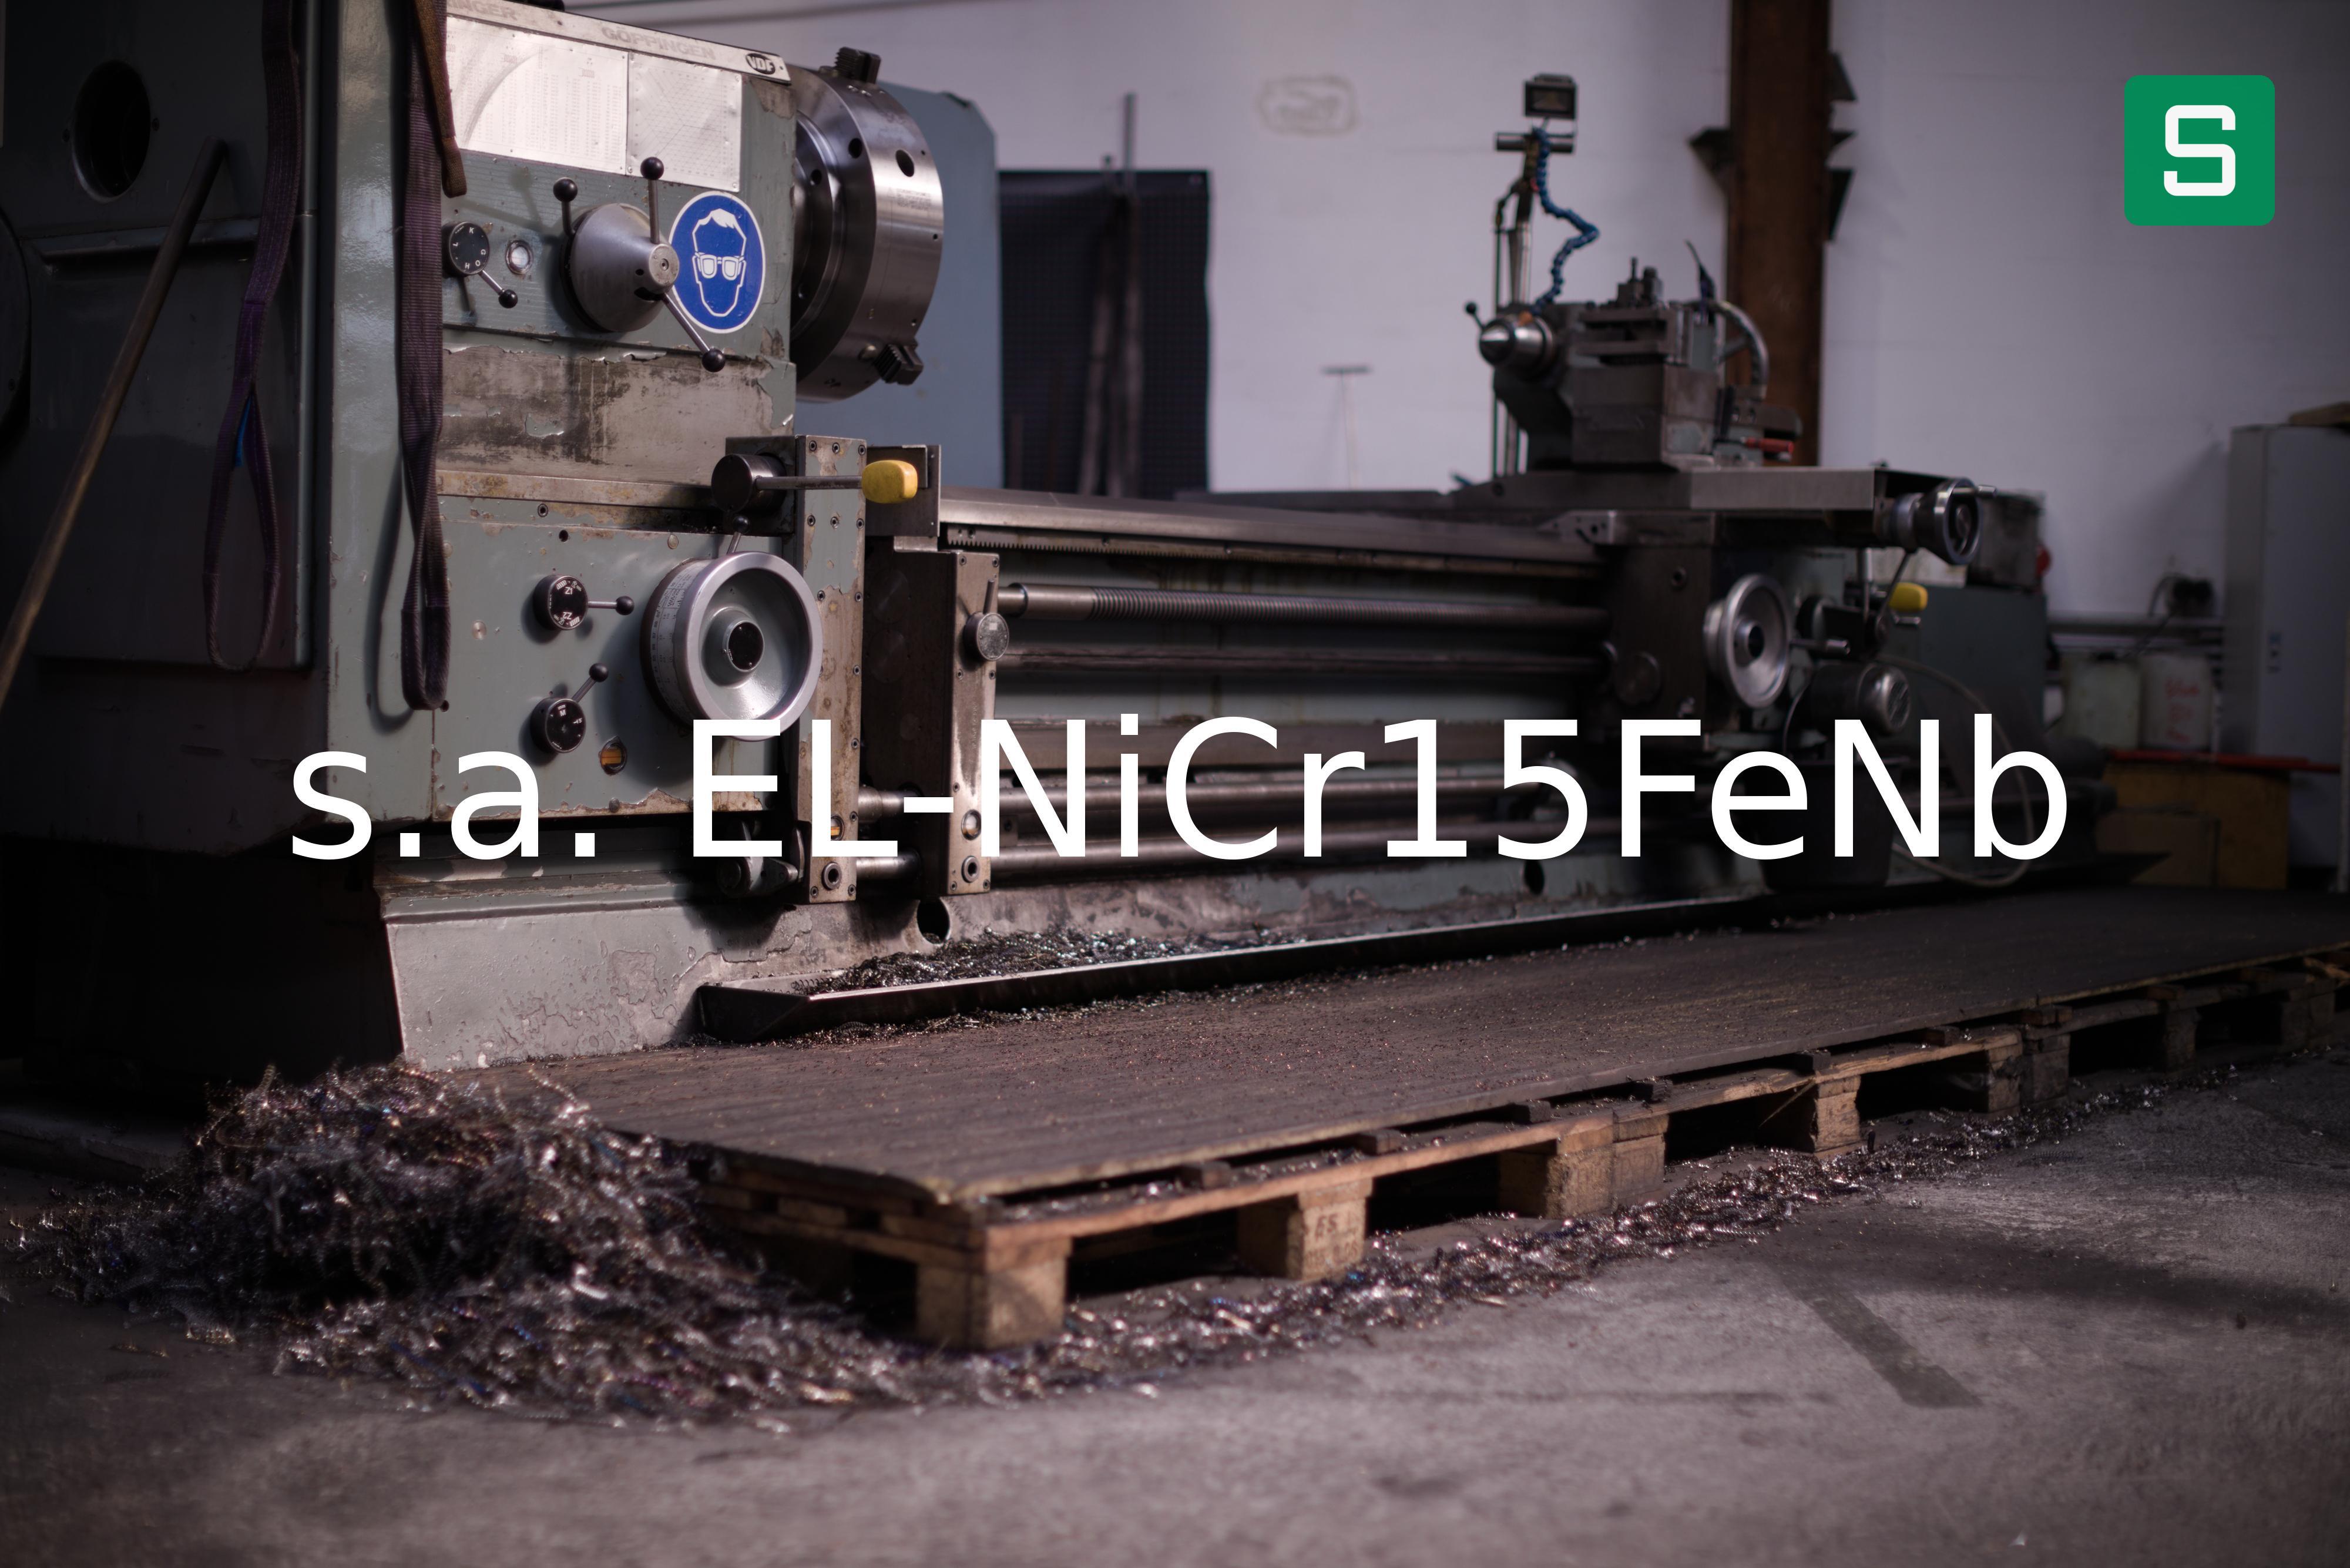 Steel Material: s.a. EL-NiCr15FeNb